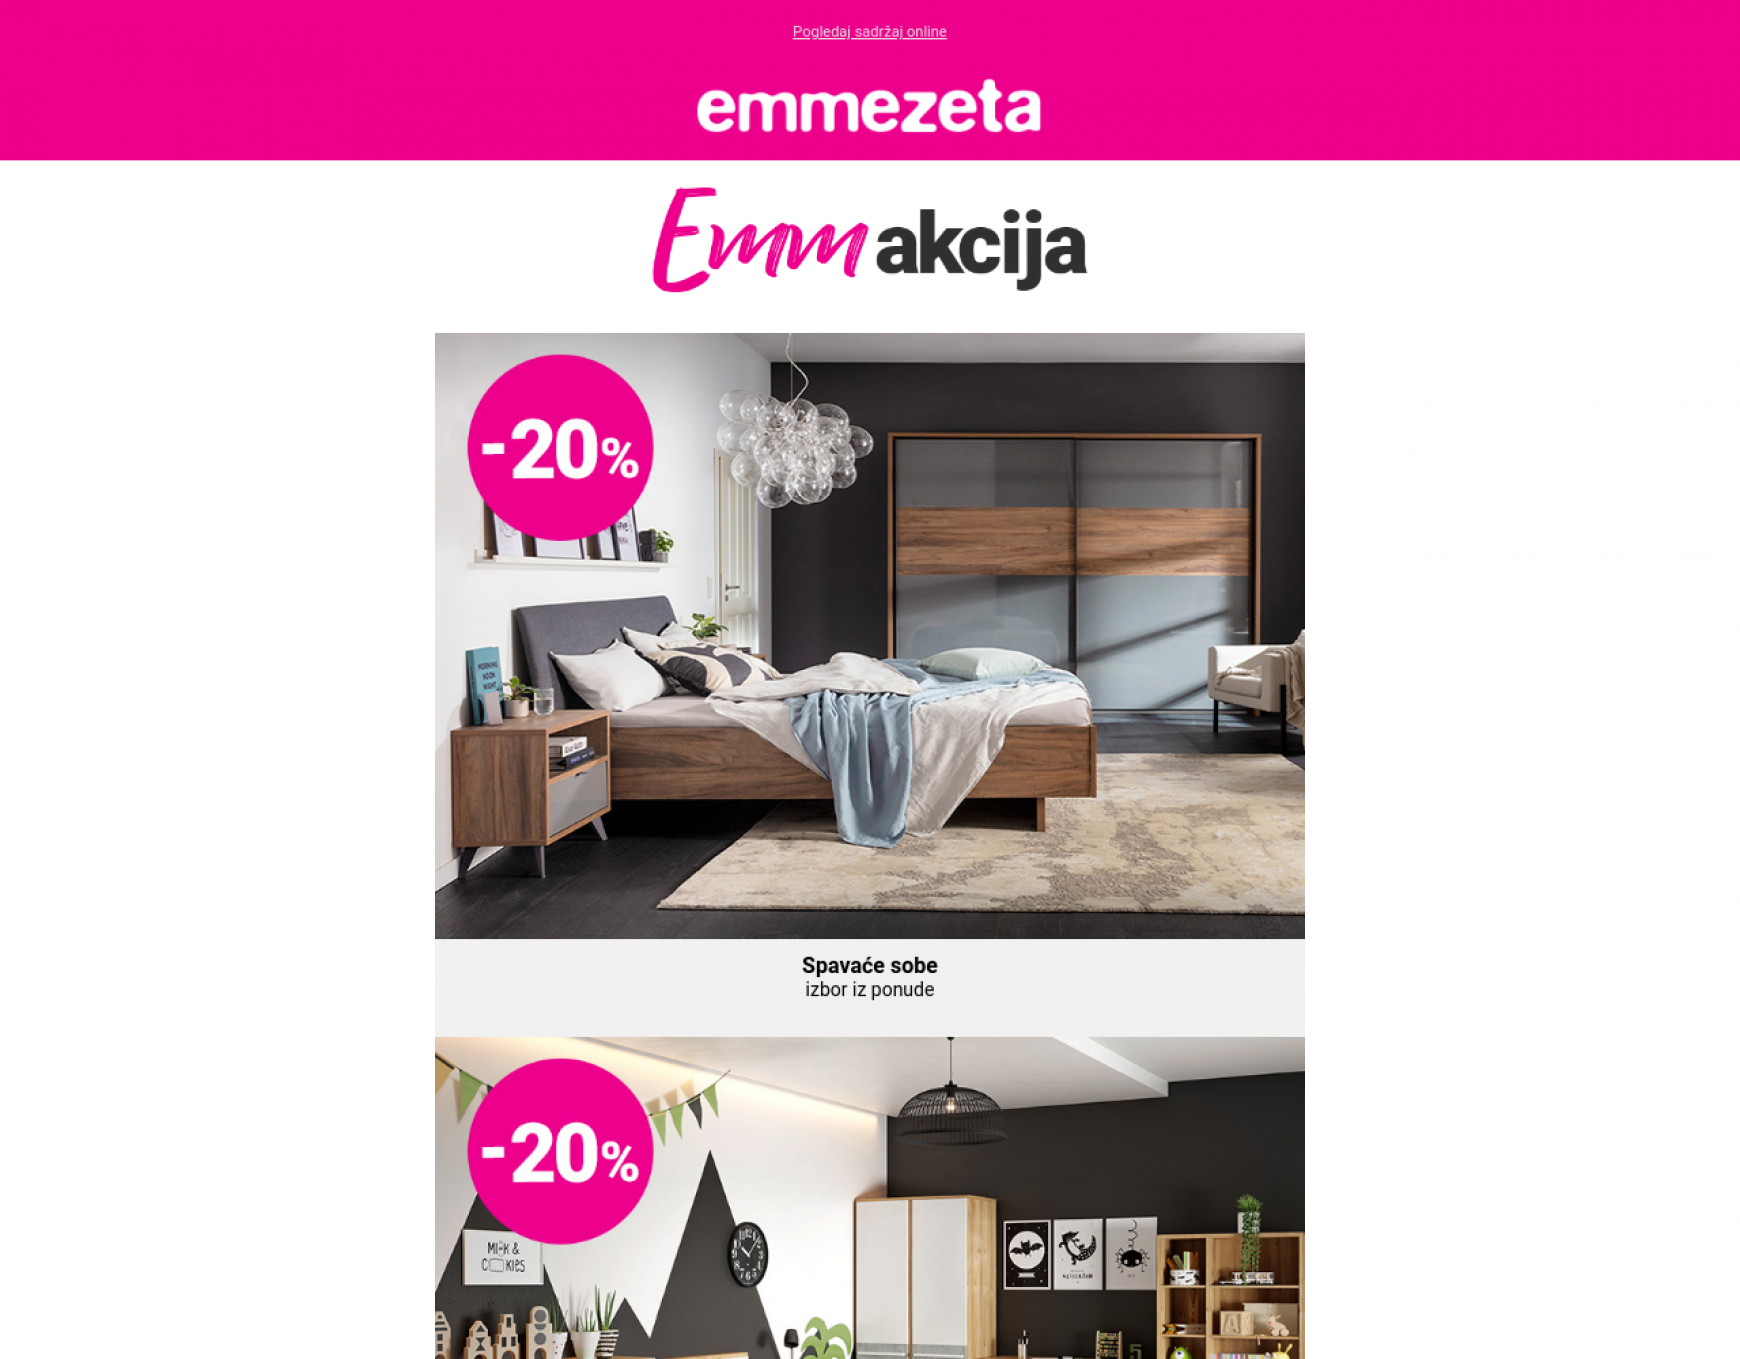 emmezeta - Emmezeta - Novi mjesec donosi nove akcije do -30%! Klikni i uštedi!